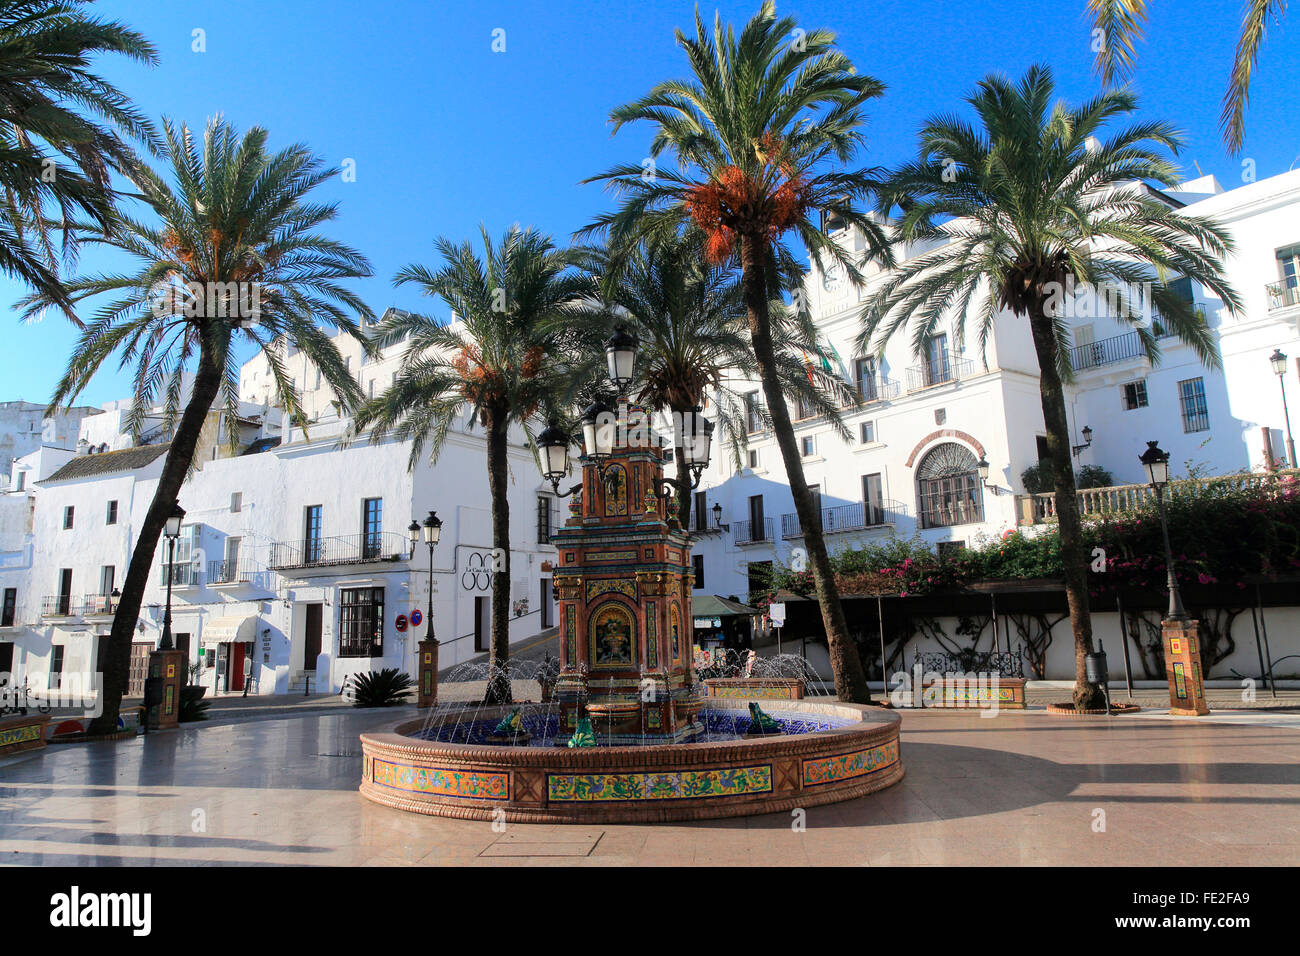 Fontana e le palme in Plaza de Espana, Vejer de la Frontera, la provincia di Cadiz Cadice, Spagna Foto Stock